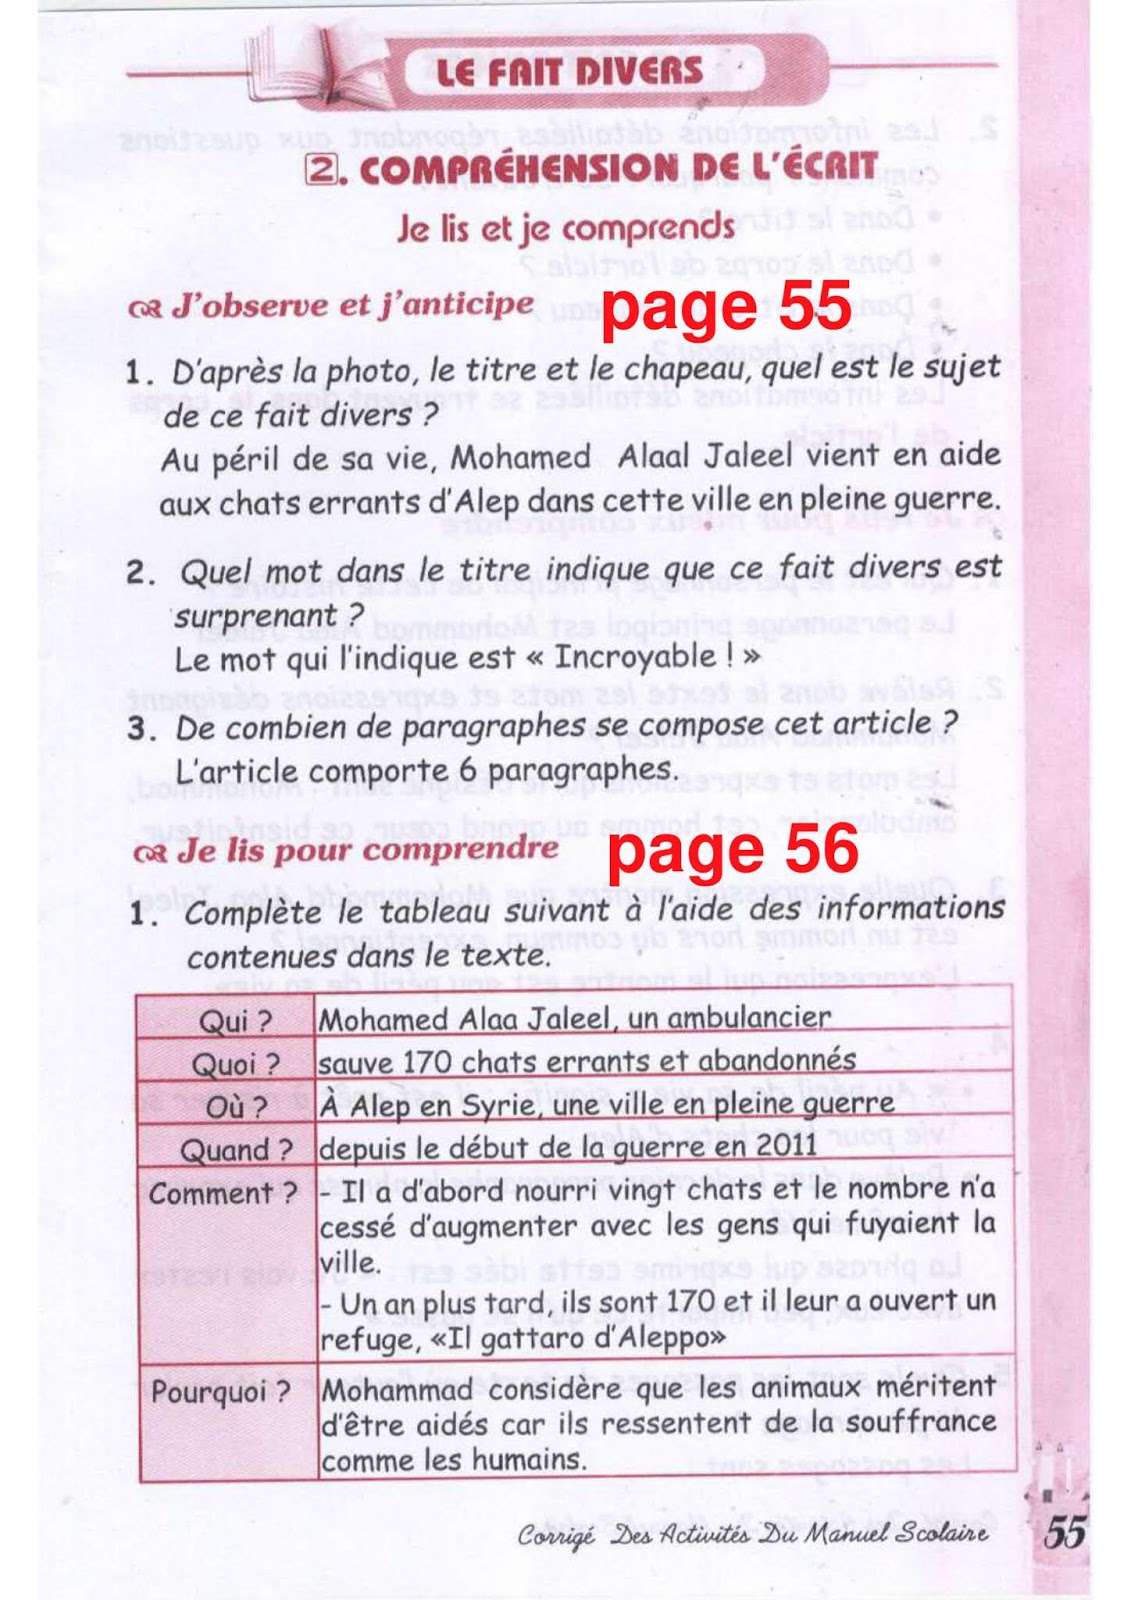 حل تمارين صفحة 55 الفرنسية للسنة الثالثة متوسط - الجيل الثاني